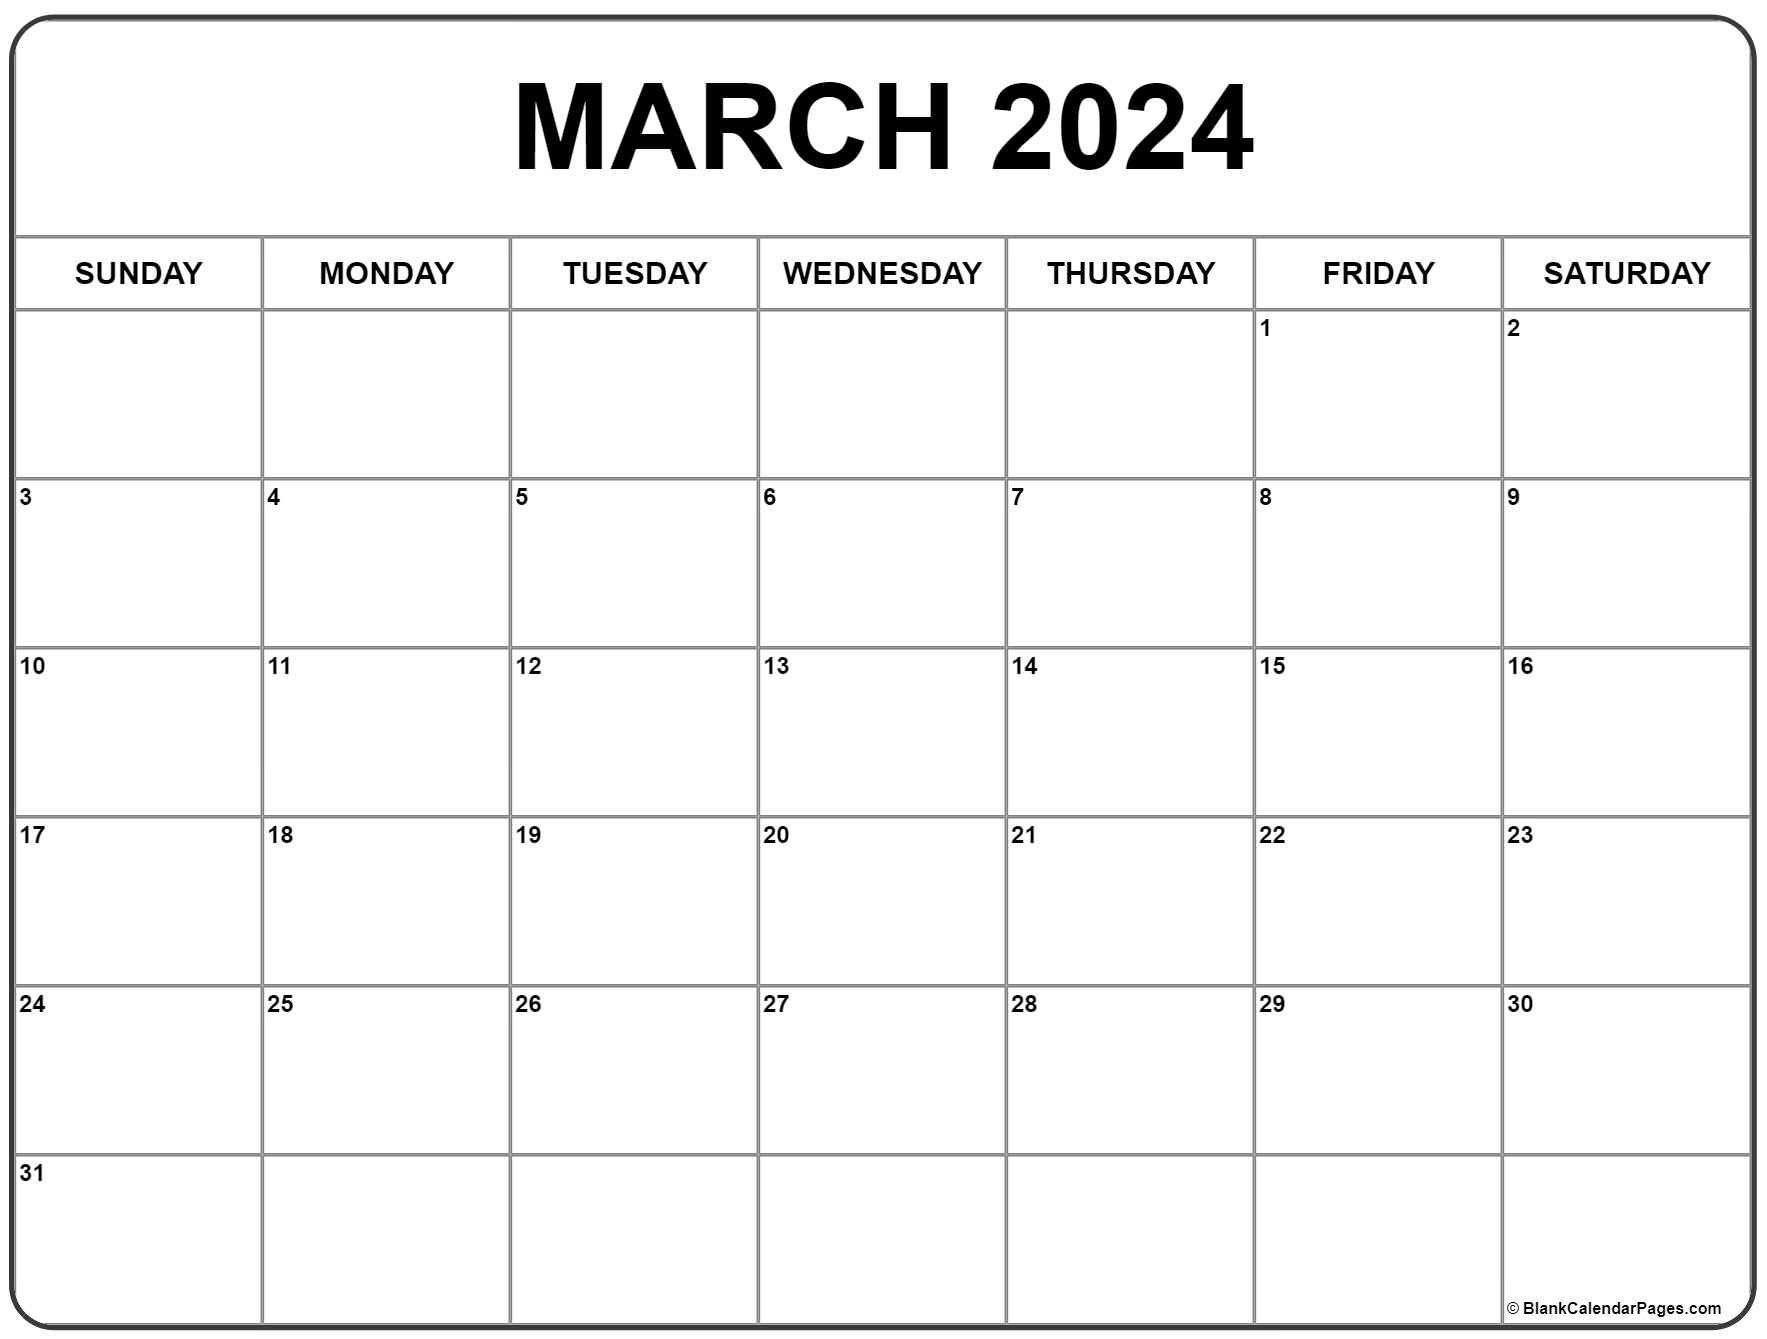 March 2024 Calendar | Free Printable Calendar for March Printable 2024 Calendar